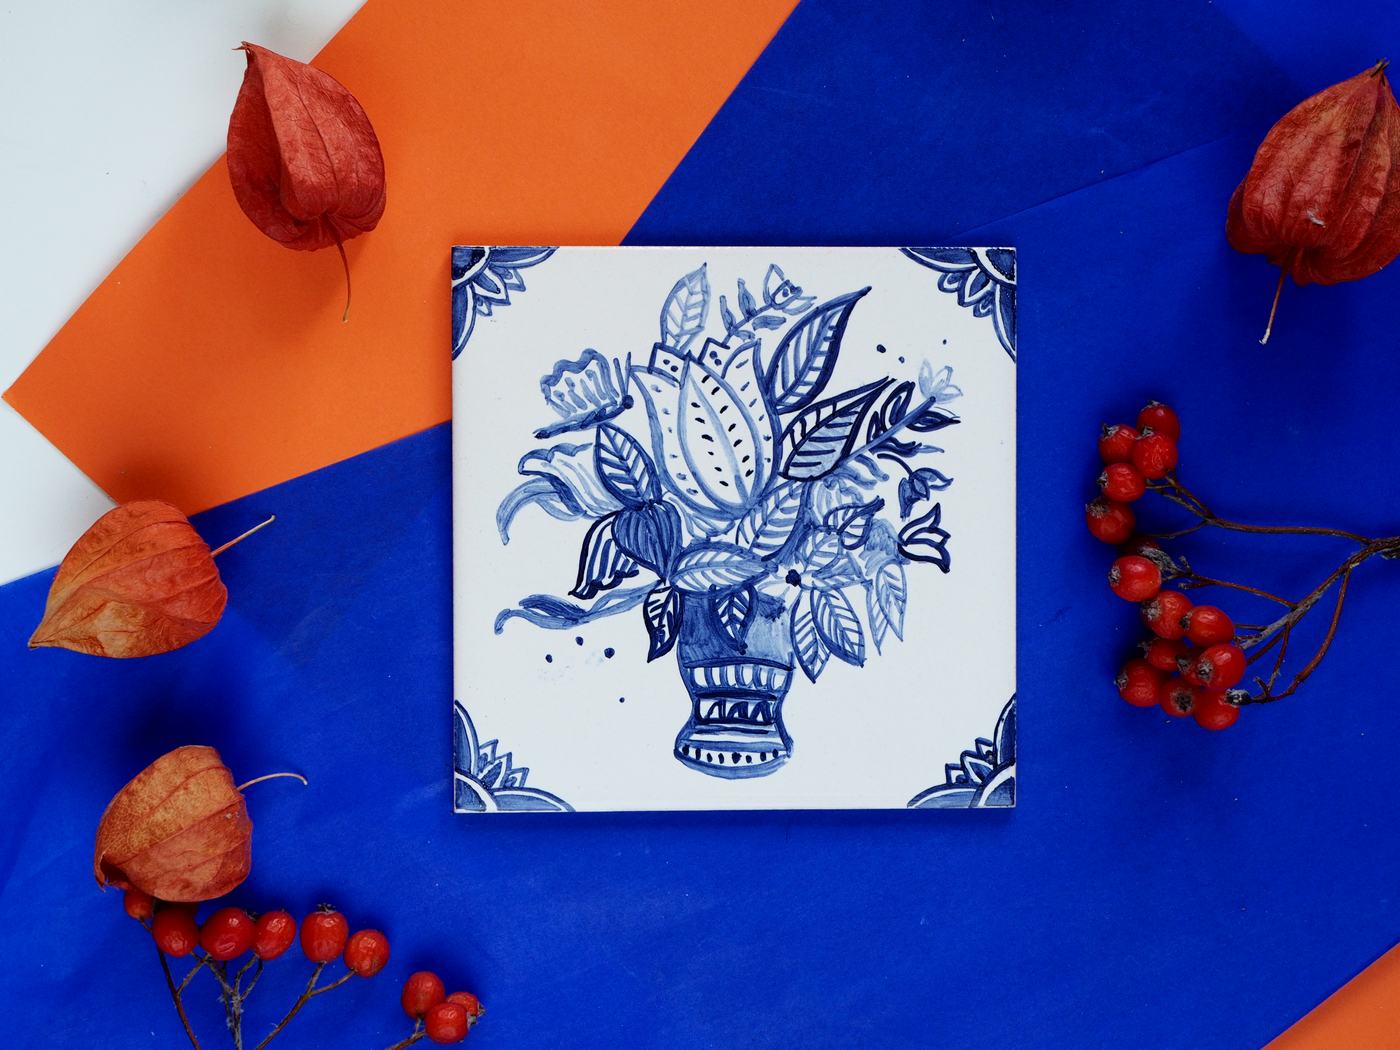 Holenderski wzór z koszem kwiatów namalowany na płytce ceramicznej